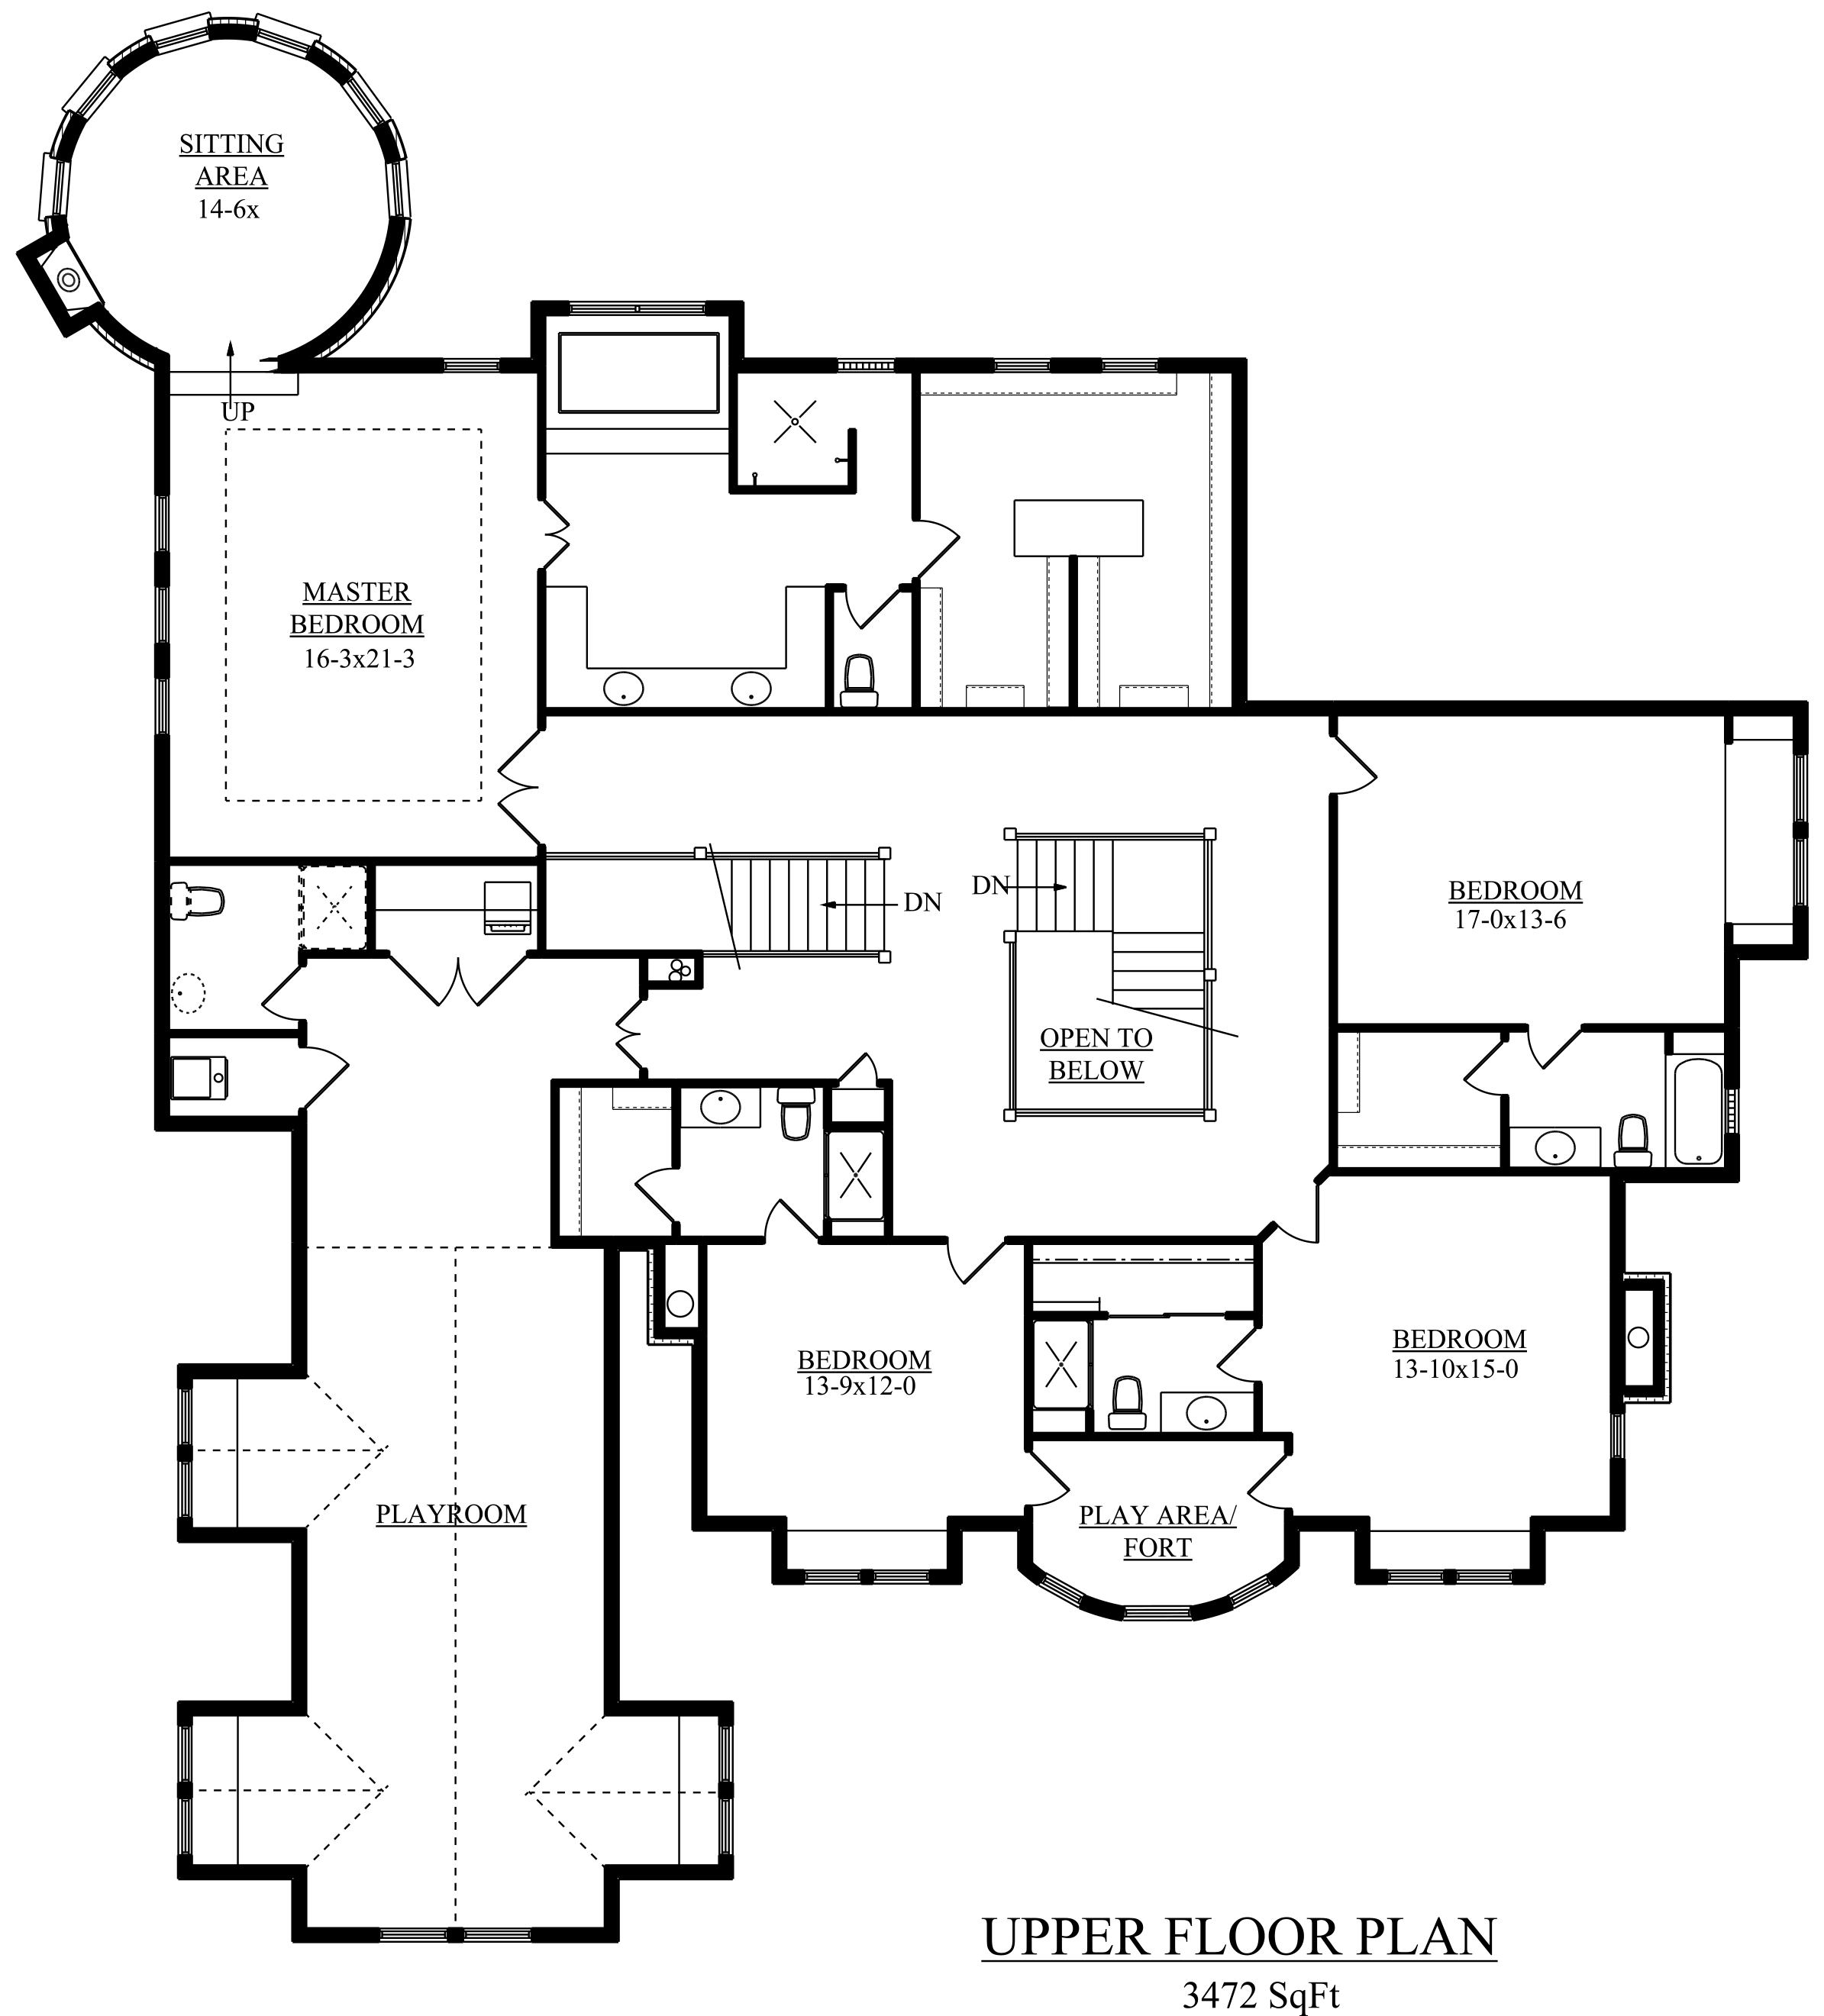 p2-the-new-haven-upper-floor-r-c